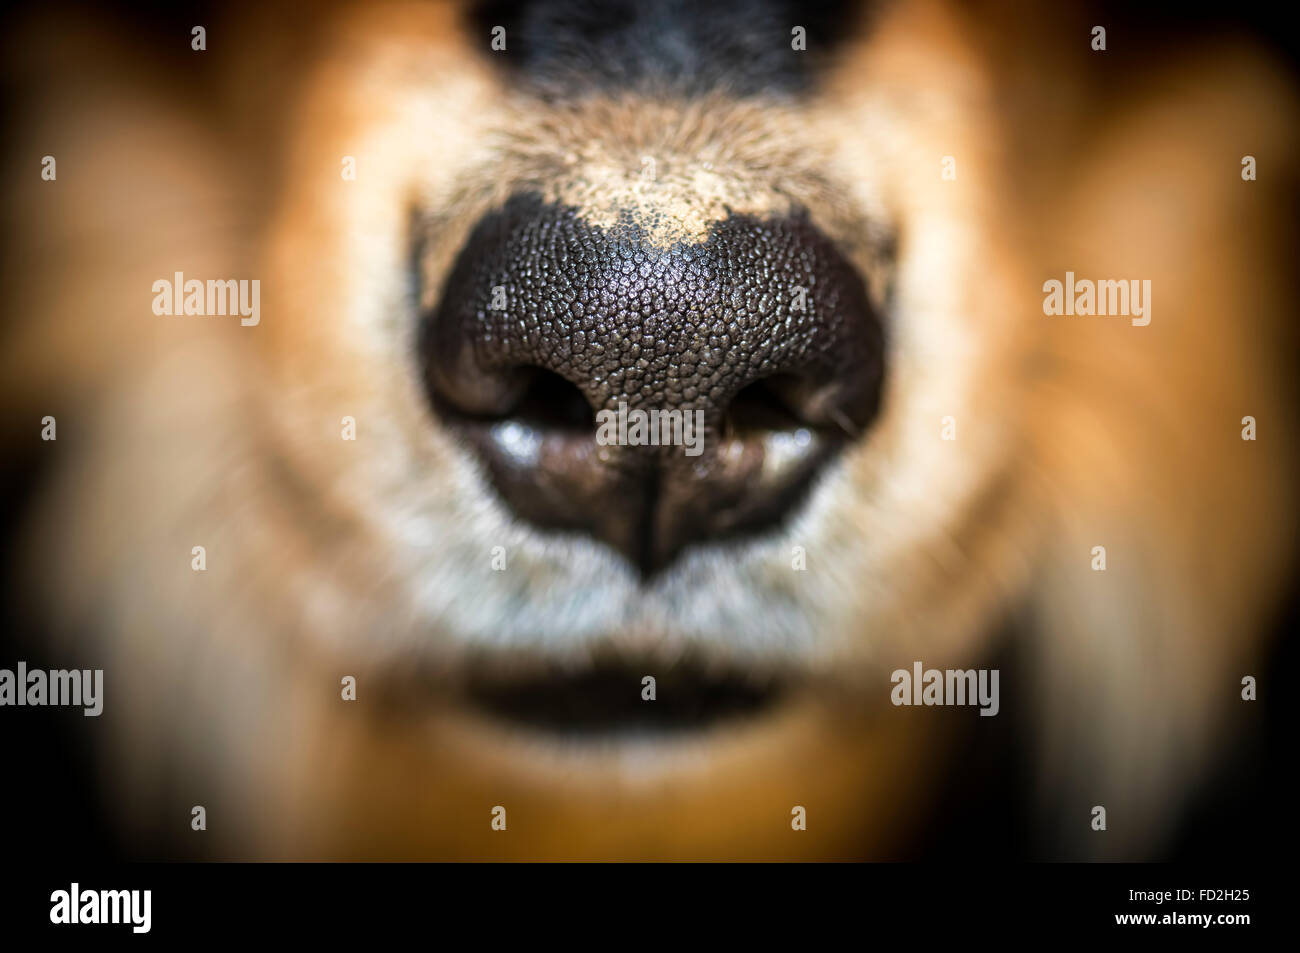 Nose of a collie retriever dog Stock Photo